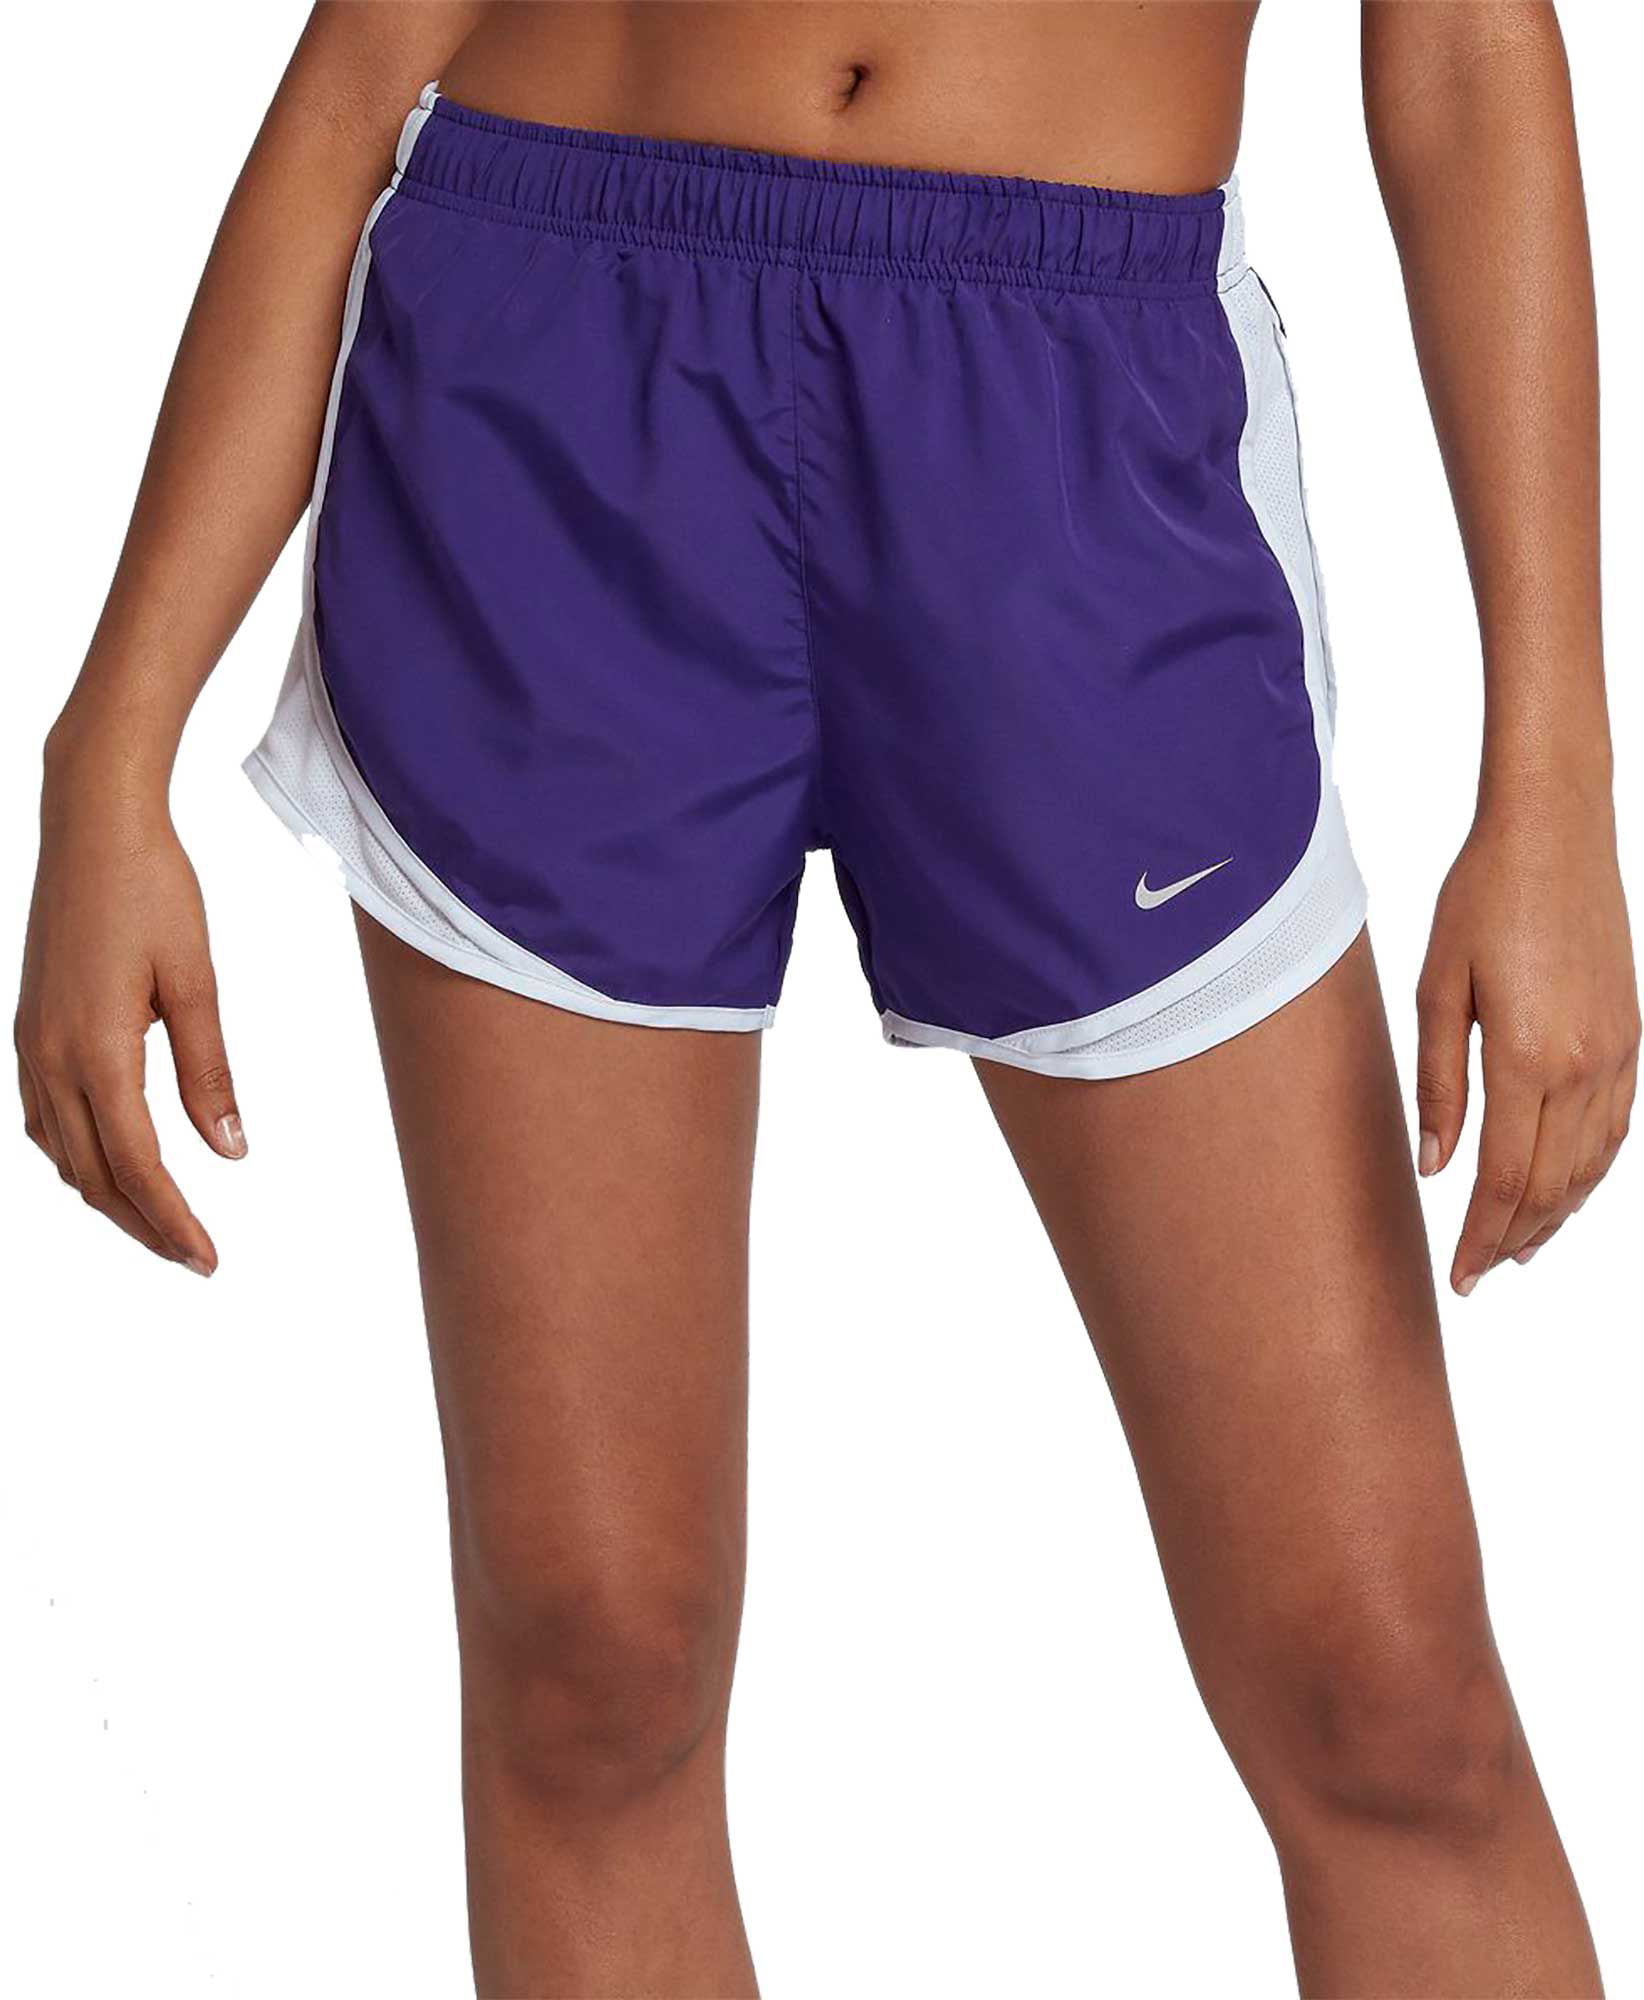 nike women's dry tempo core running shorts